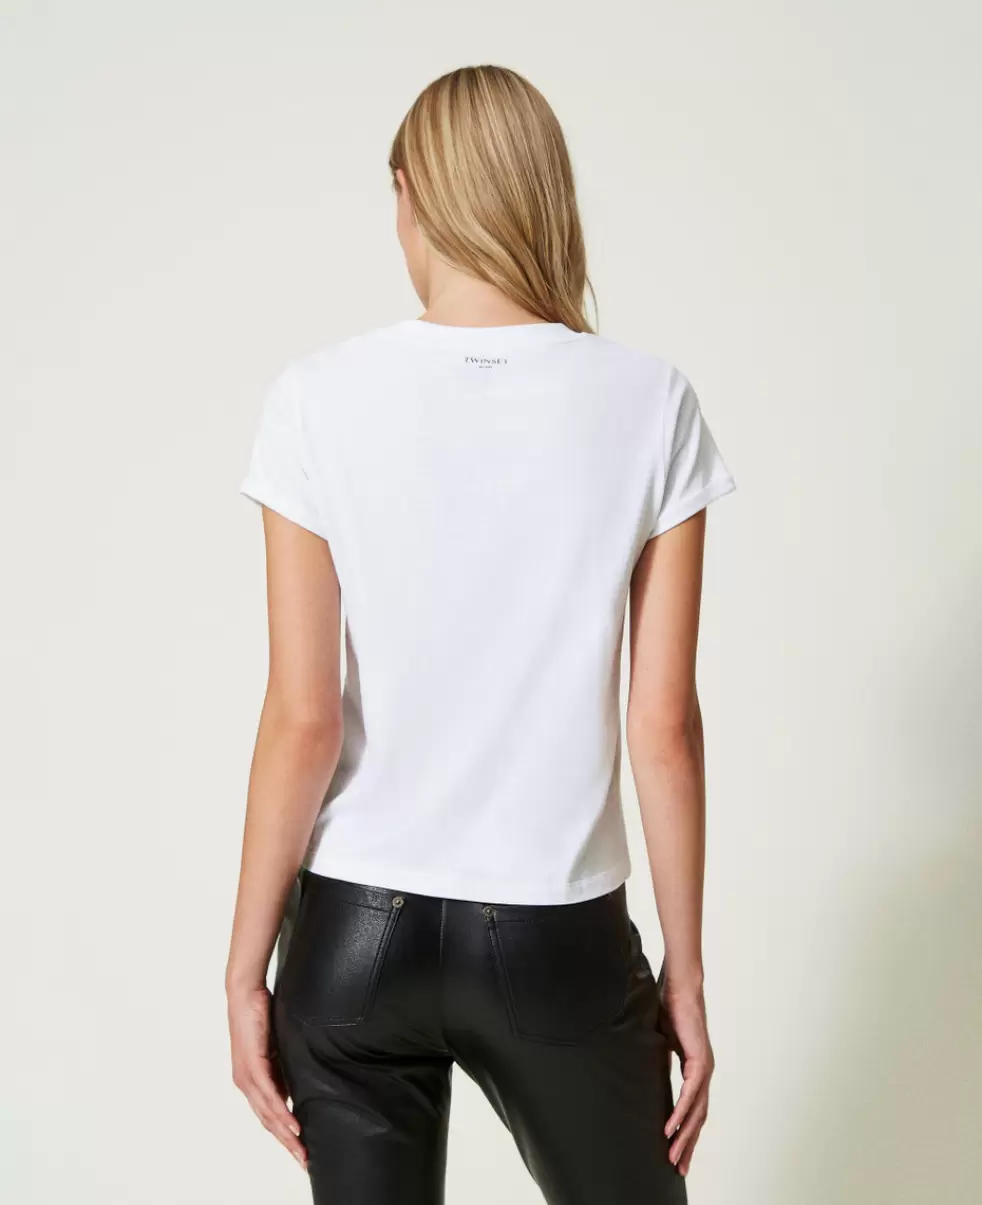 Twinset Damen T-Shirts Und Tops T-Shirt Im Regular-Fit Mit Print Weiß Preisanpassung - 3